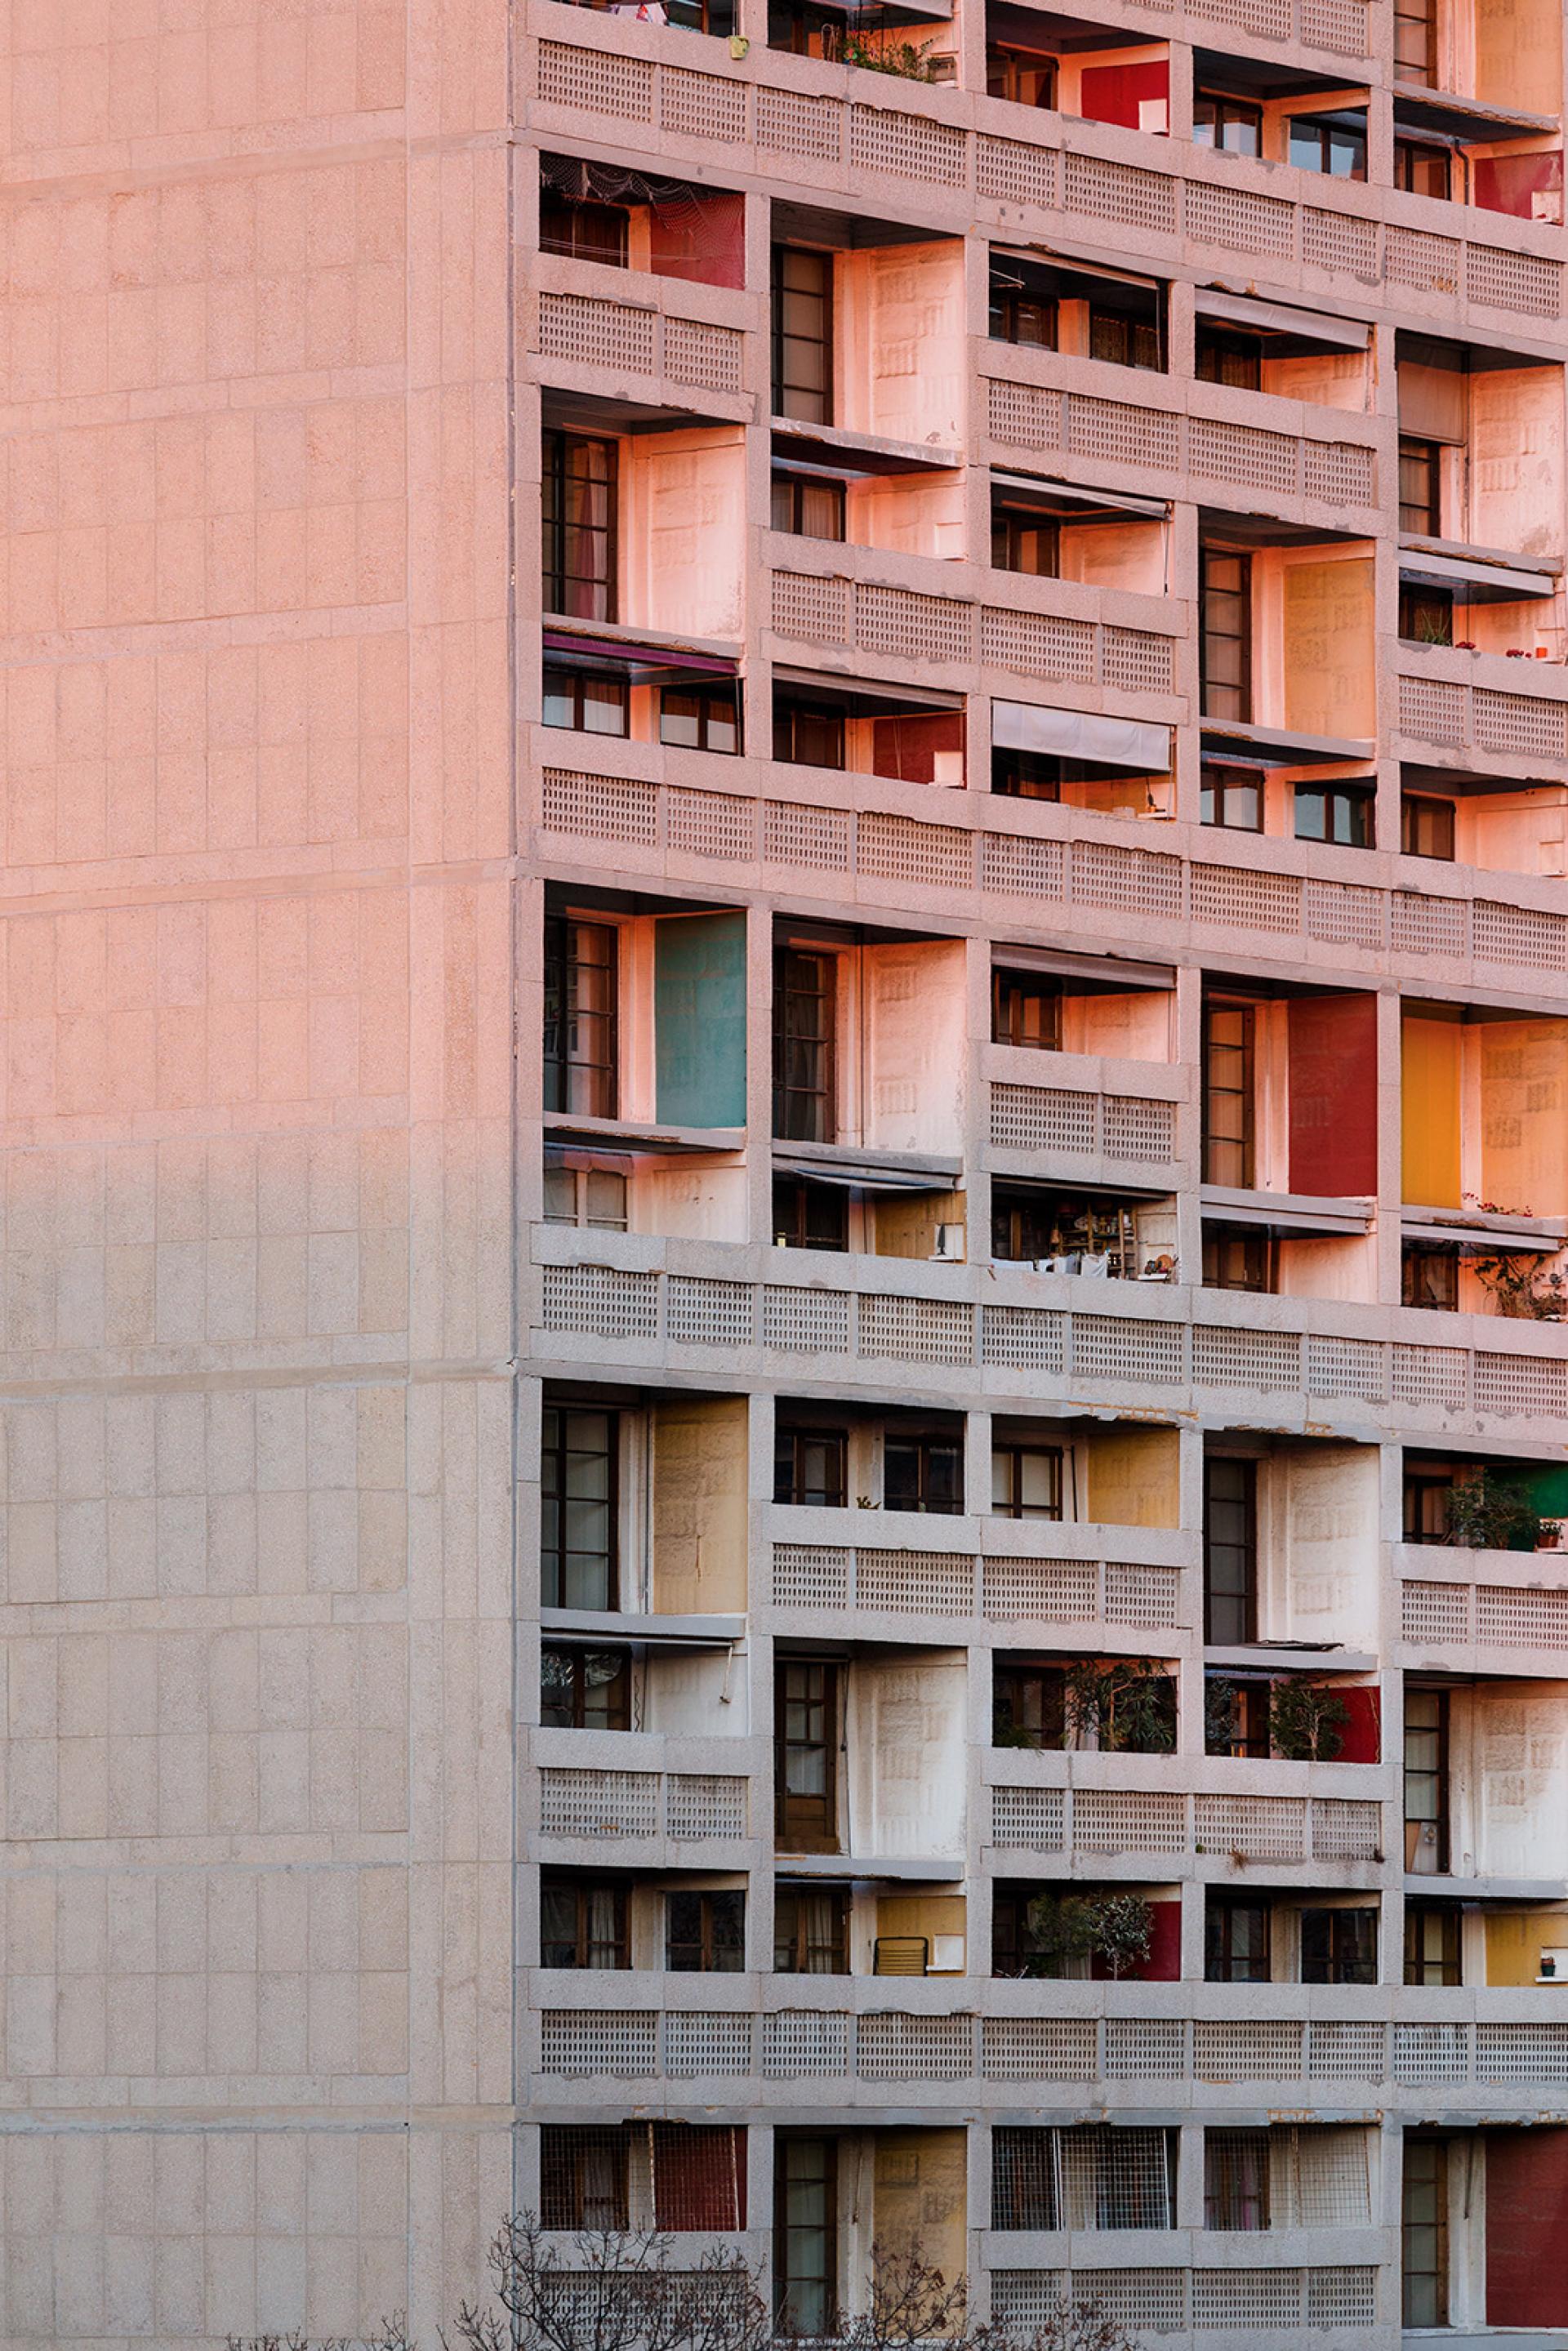 The Unité d'Habitation or Cité Radieuse by Le Corbusier (1947-1952) in Marseille, France. | © Roberto Conte (2017)